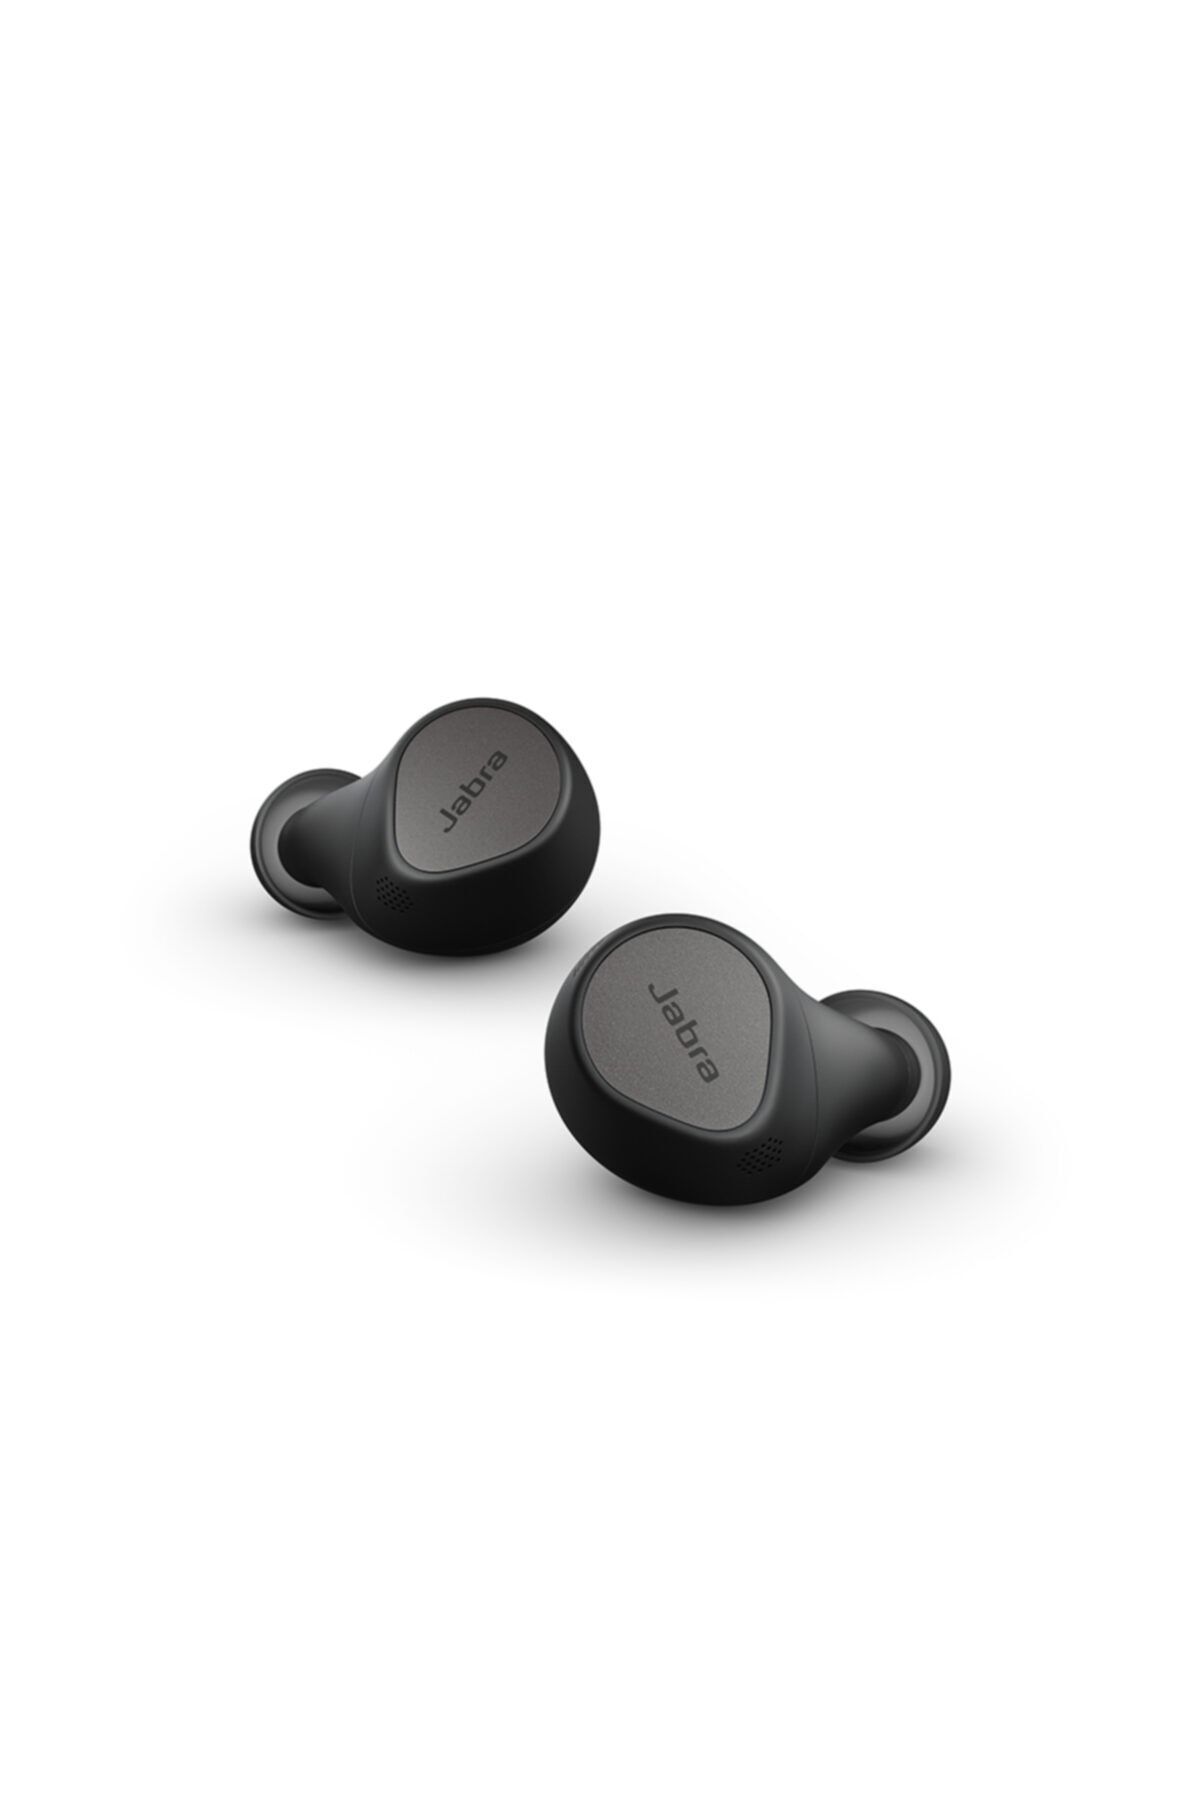 Jabra Elite 7 Pro Multi Sensör Ses Teknolojisine Sahip Bluetooth Kulak Içi Kulaklık - Titanyum Siyah